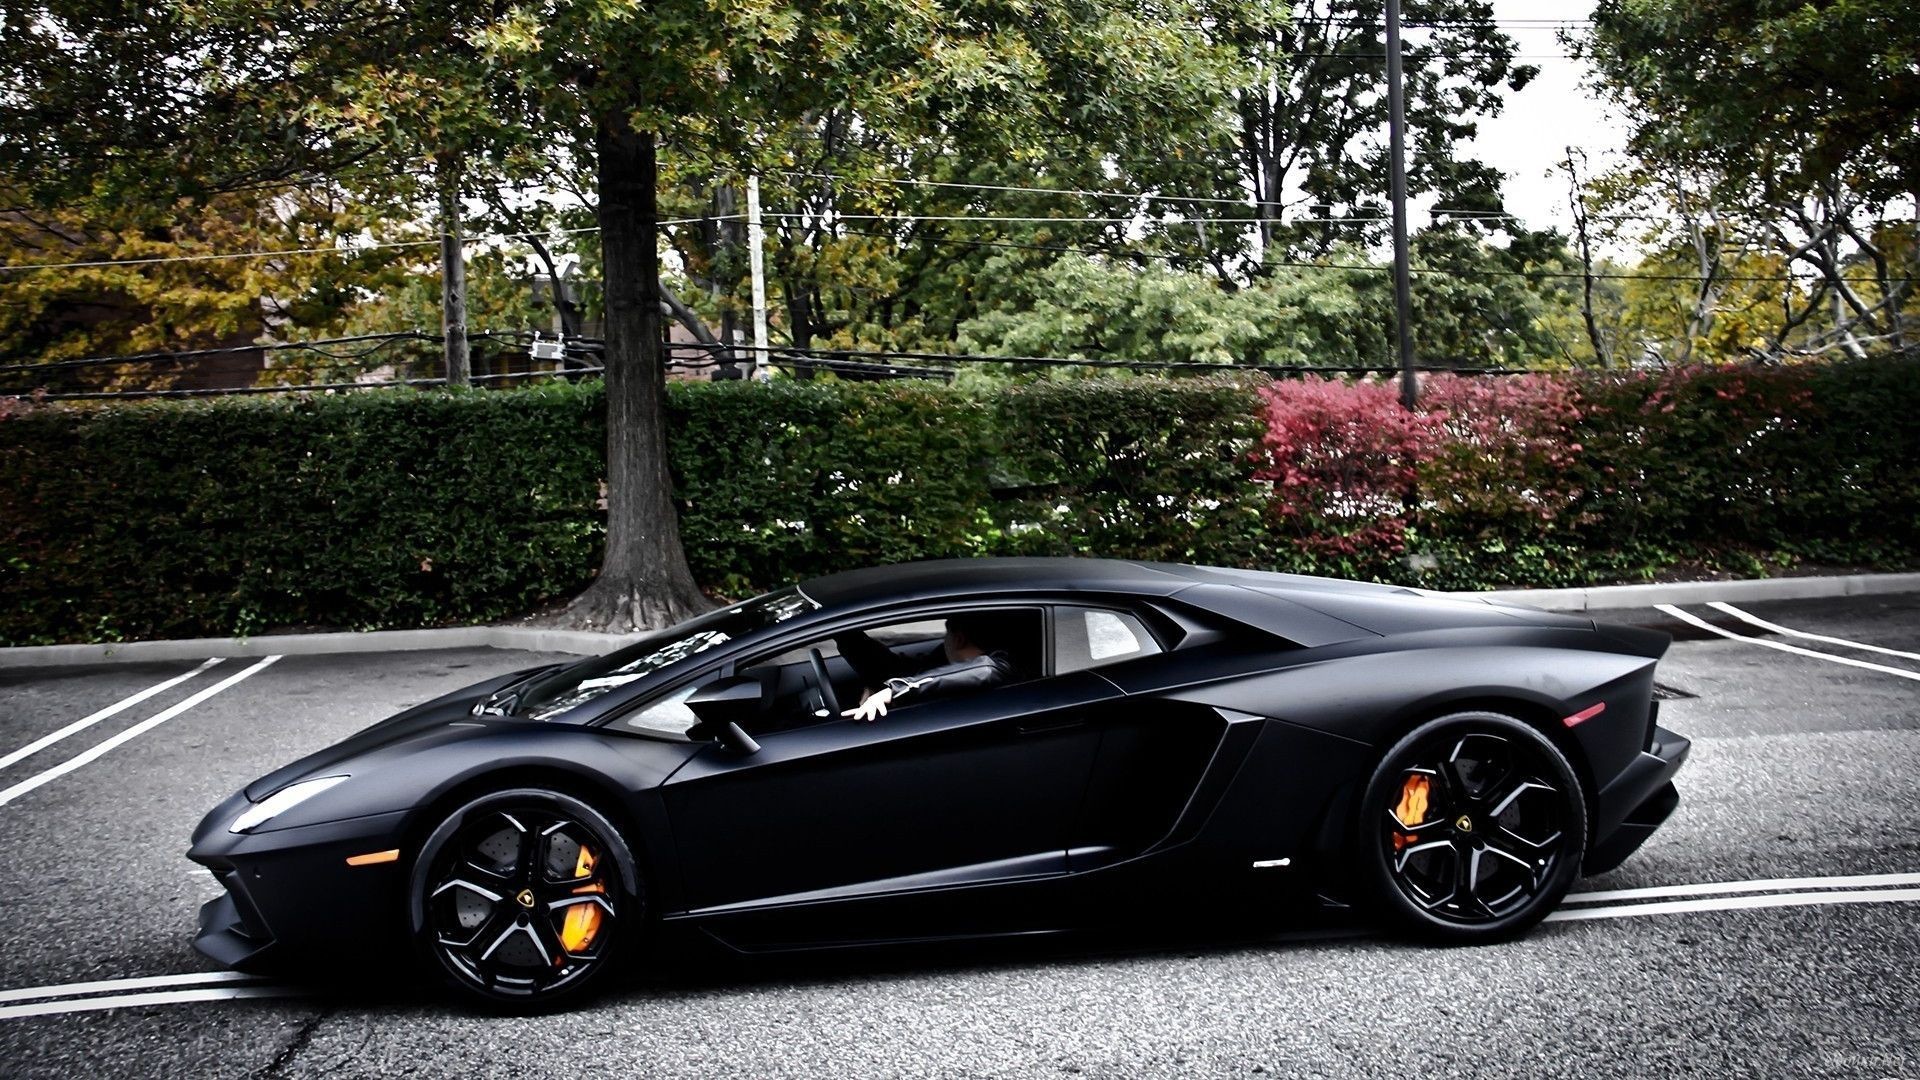 Photosut Farrari India Car Full Size Hd Wallpeper 11 - Lamborghini Aventador Black Wallpaper Hd - HD Wallpaper 